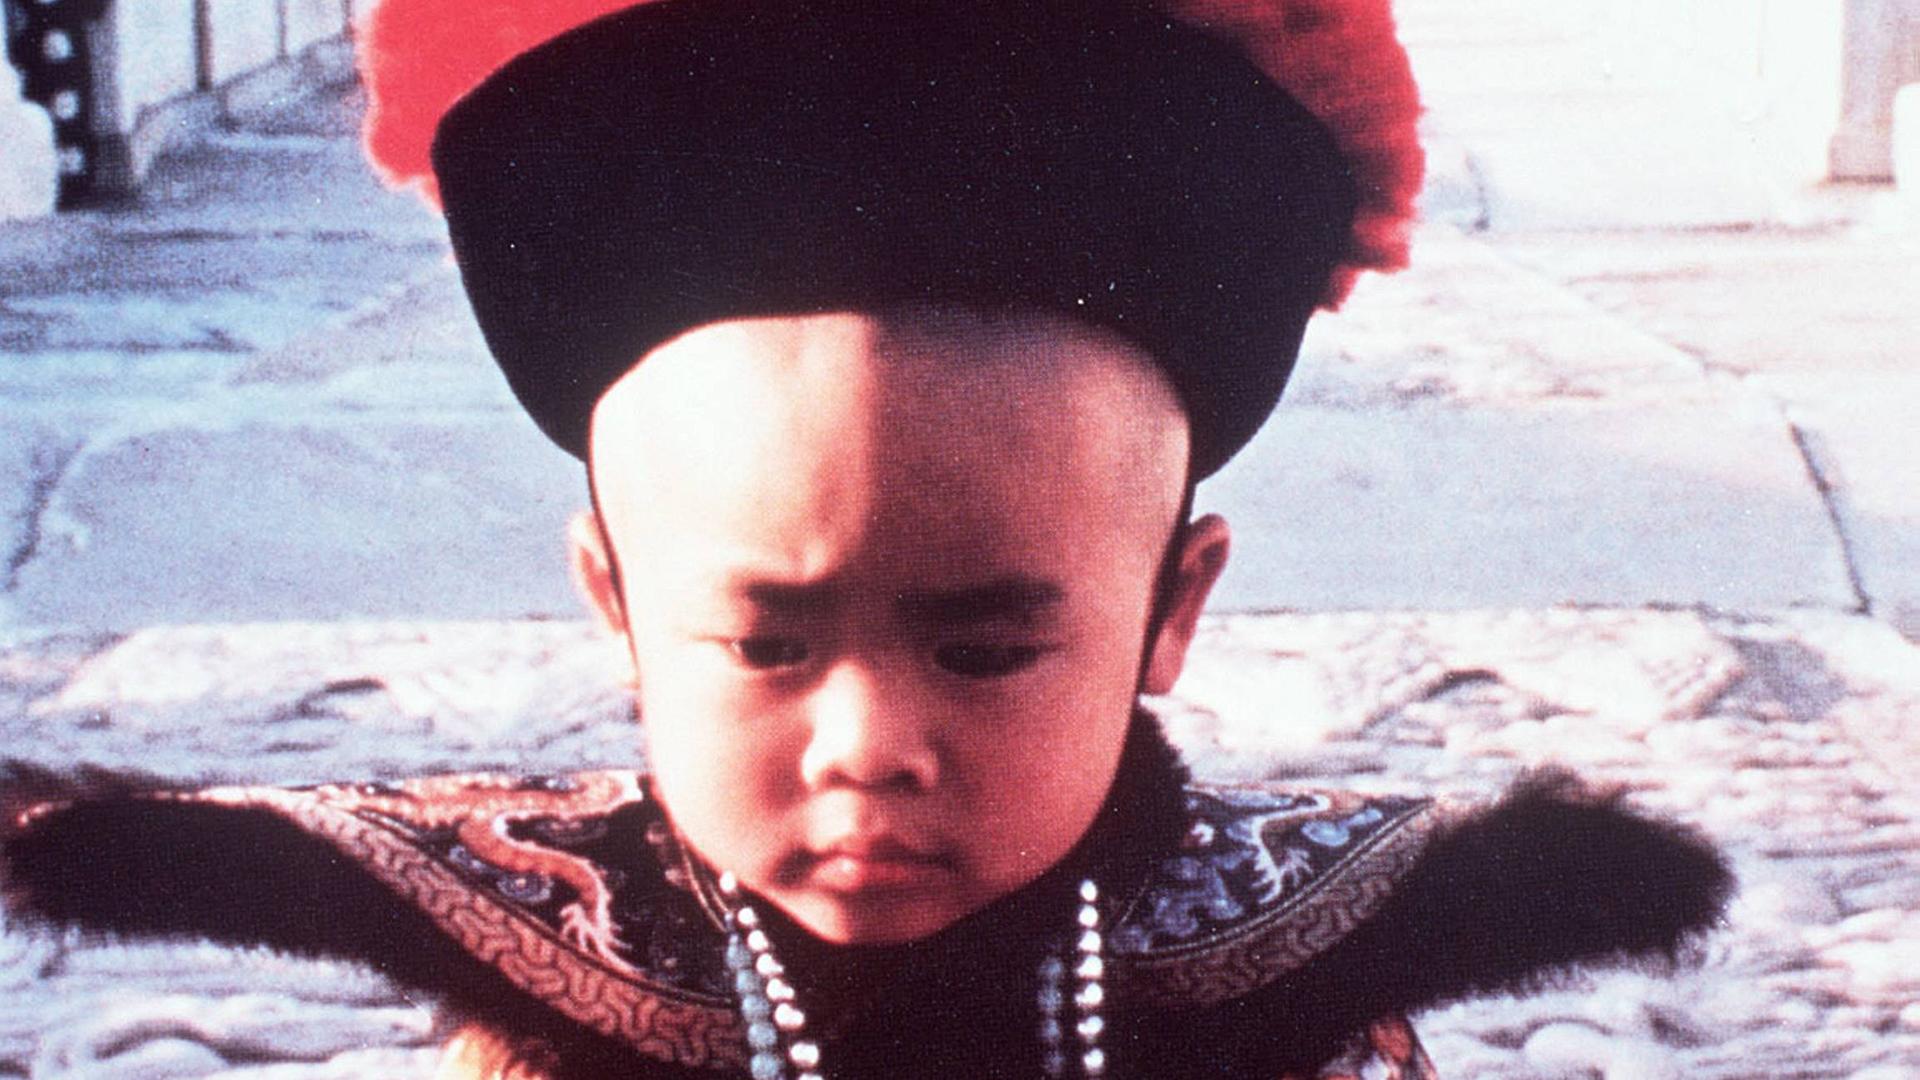 Foto zum Film "Der letzte Kaiser" von Bernardo Bertolucci aus dem Jahr 1987: Der dreijährige Pu Yi wird 1908 der letzte Kaiser auf dem Drachenthron.